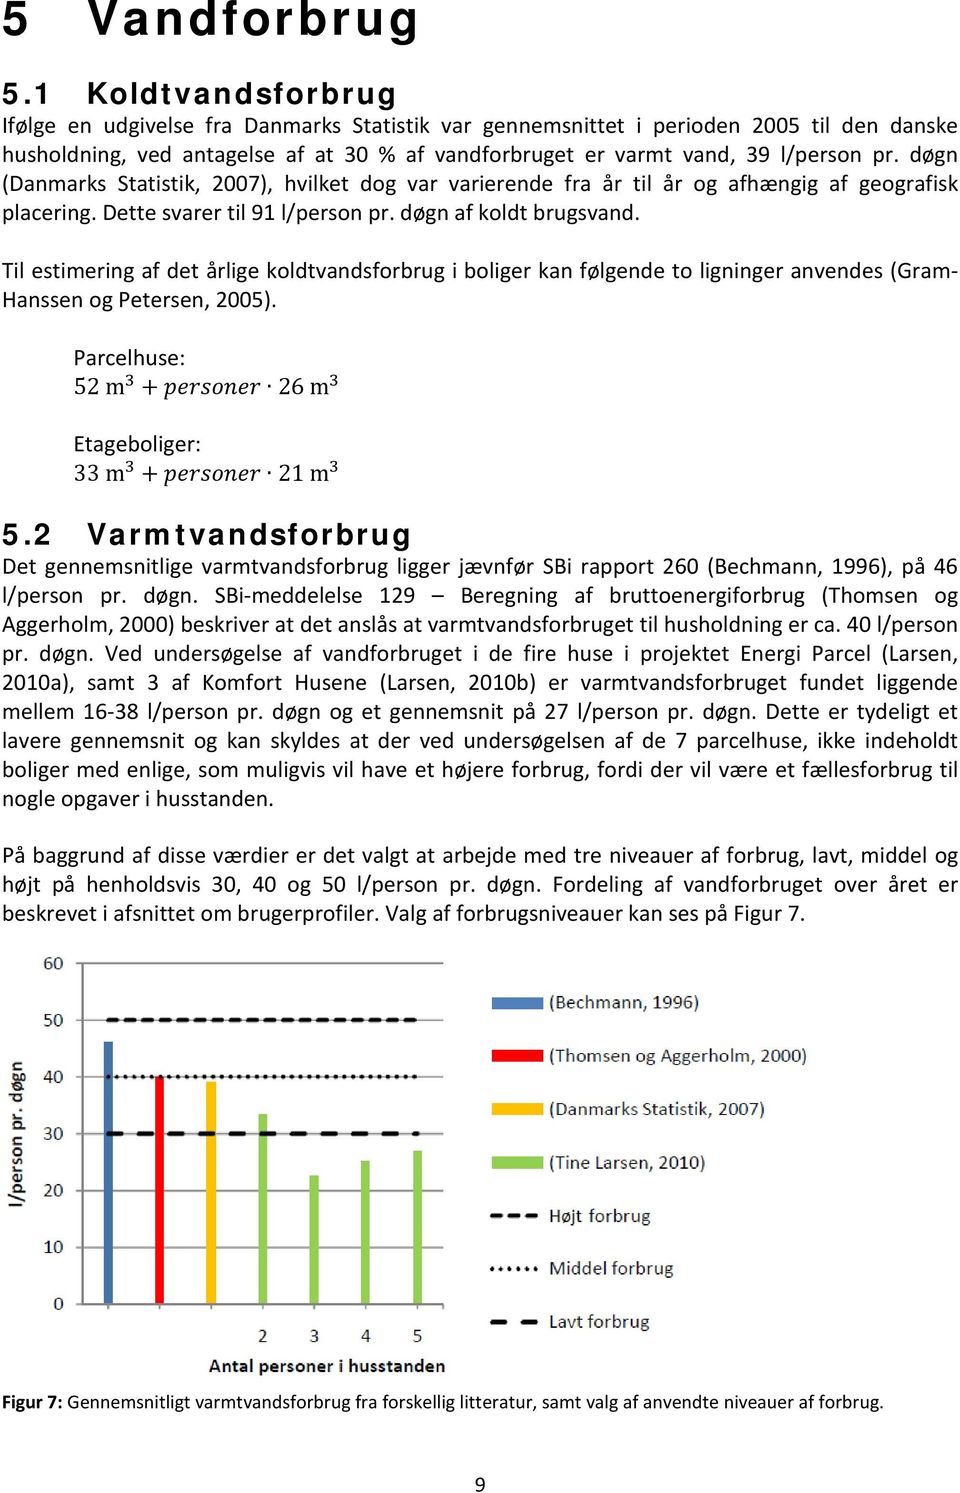 døgn (Danmarks Statistik, 2007), hvilket dog var varierende fra år til år og afhængig af geografisk placering. Dette svarer til 91 l/person pr. døgn af koldt brugsvand.